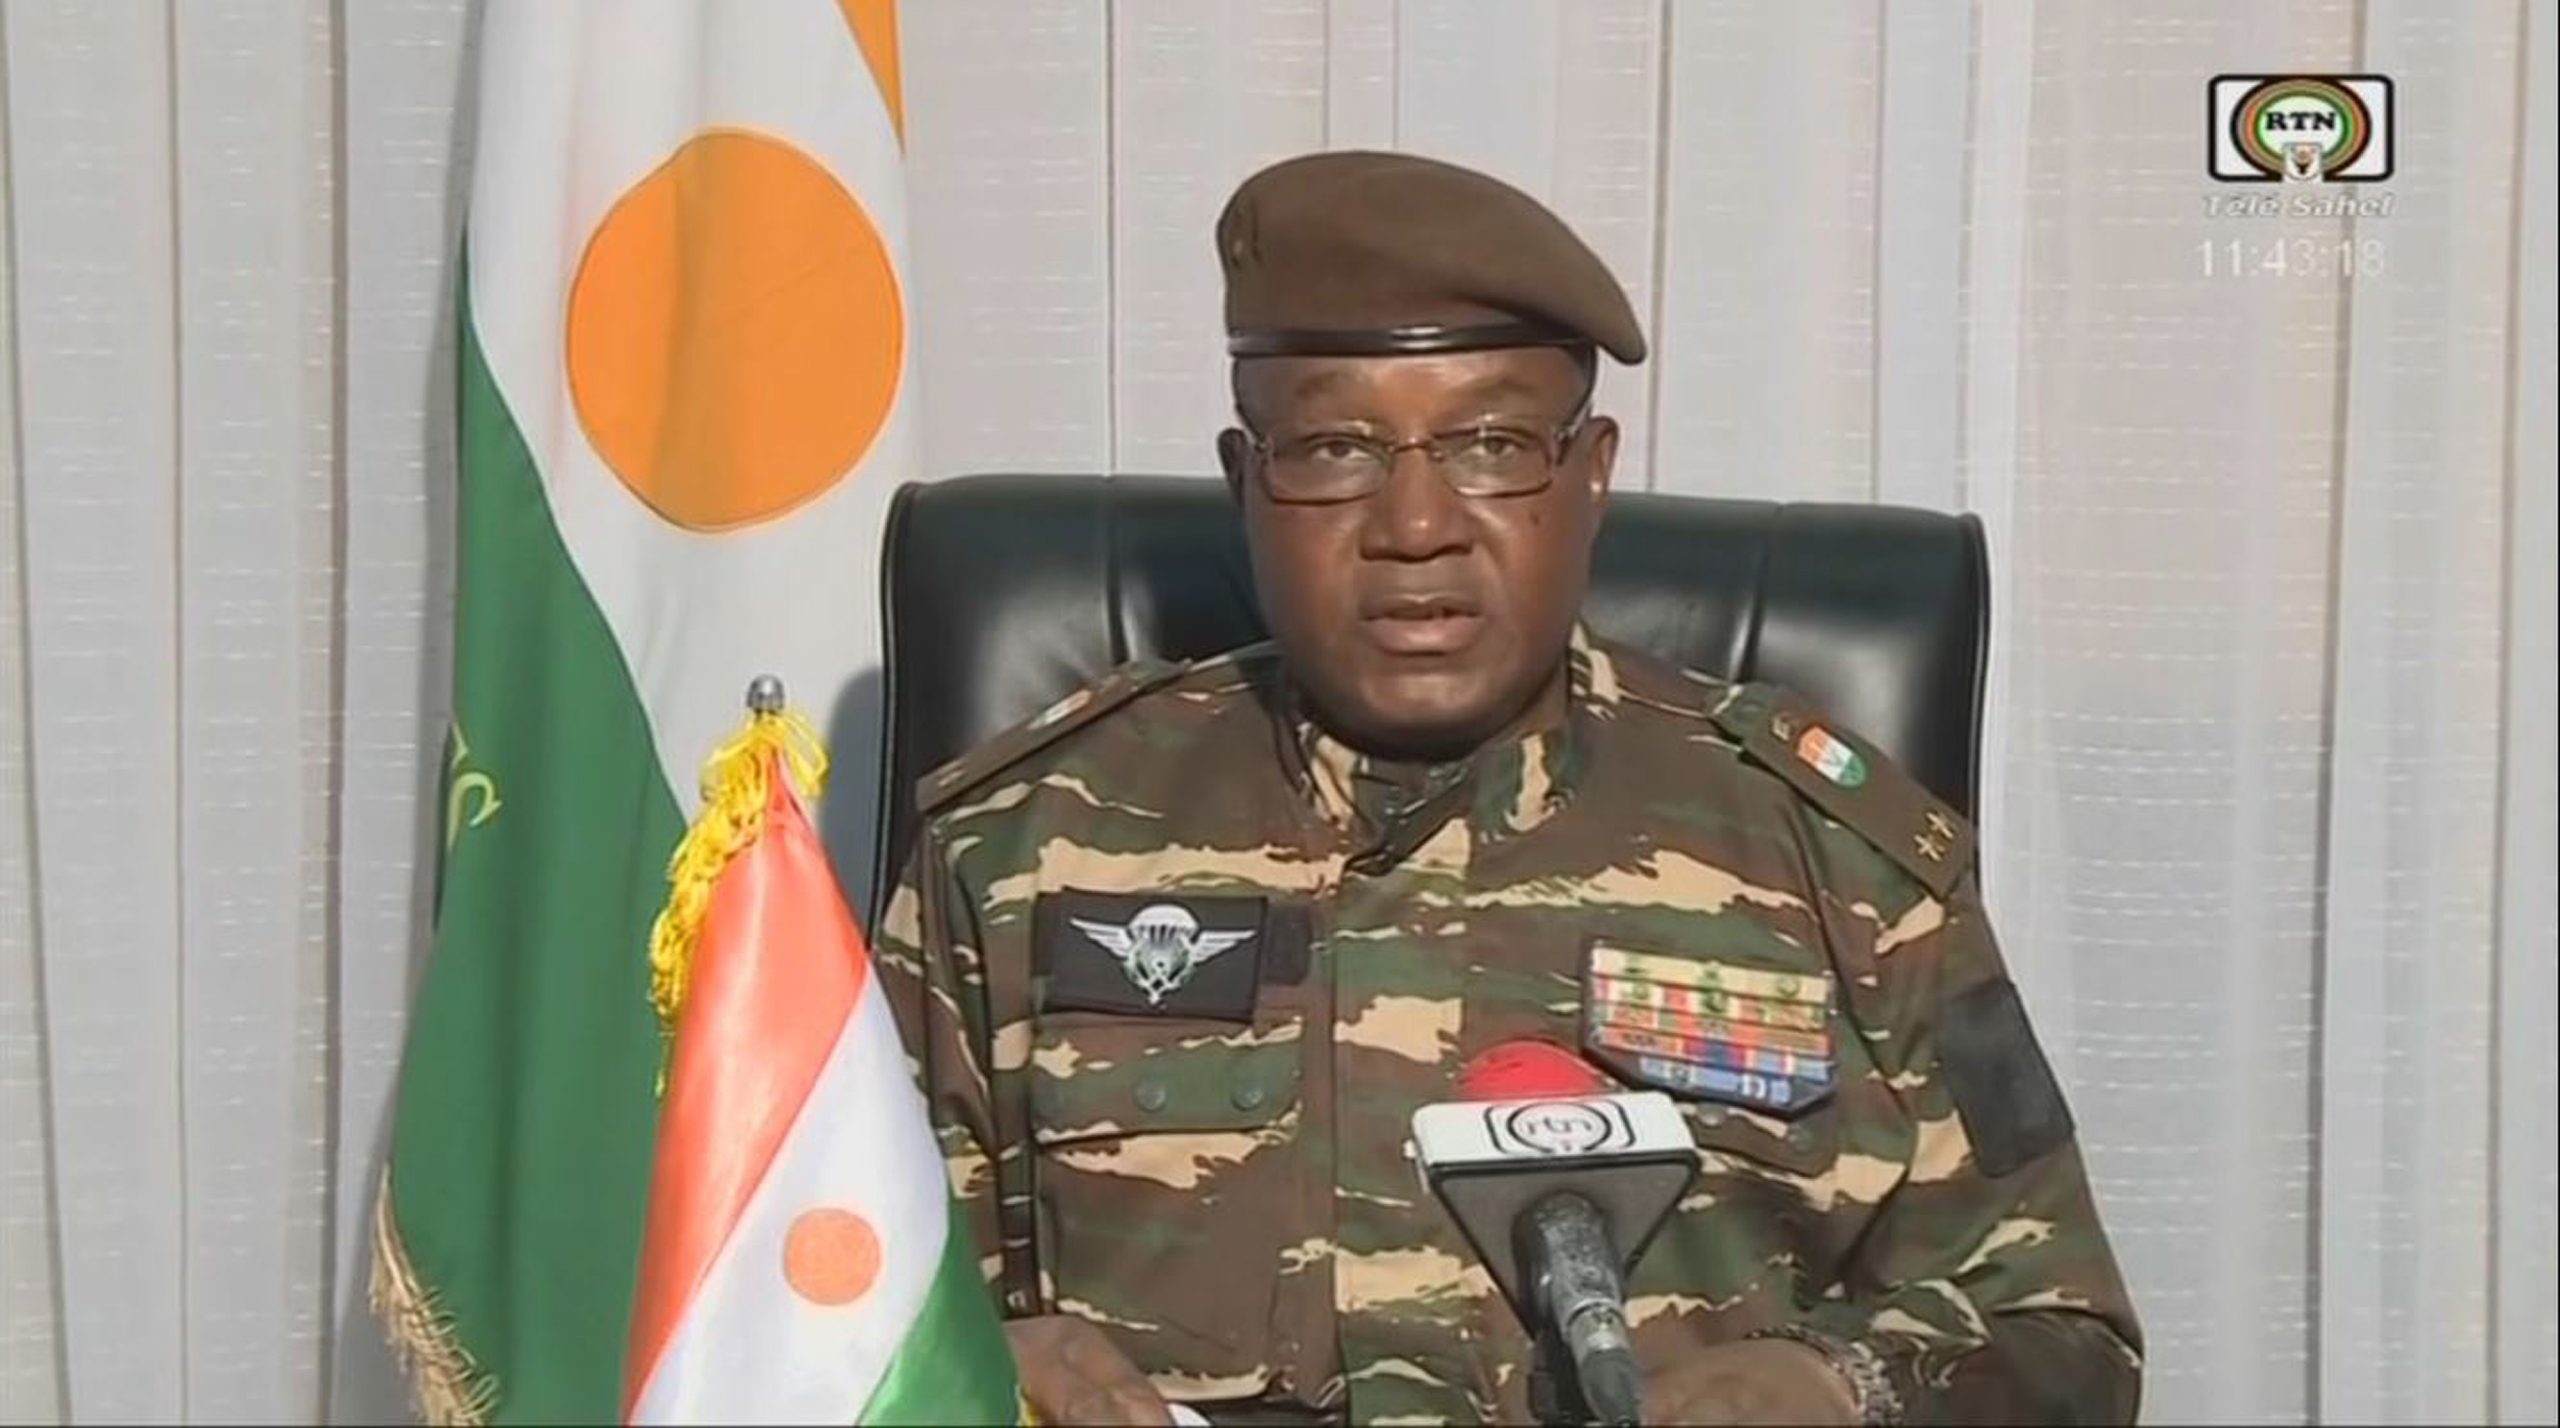 Army general declares himself Niger leader